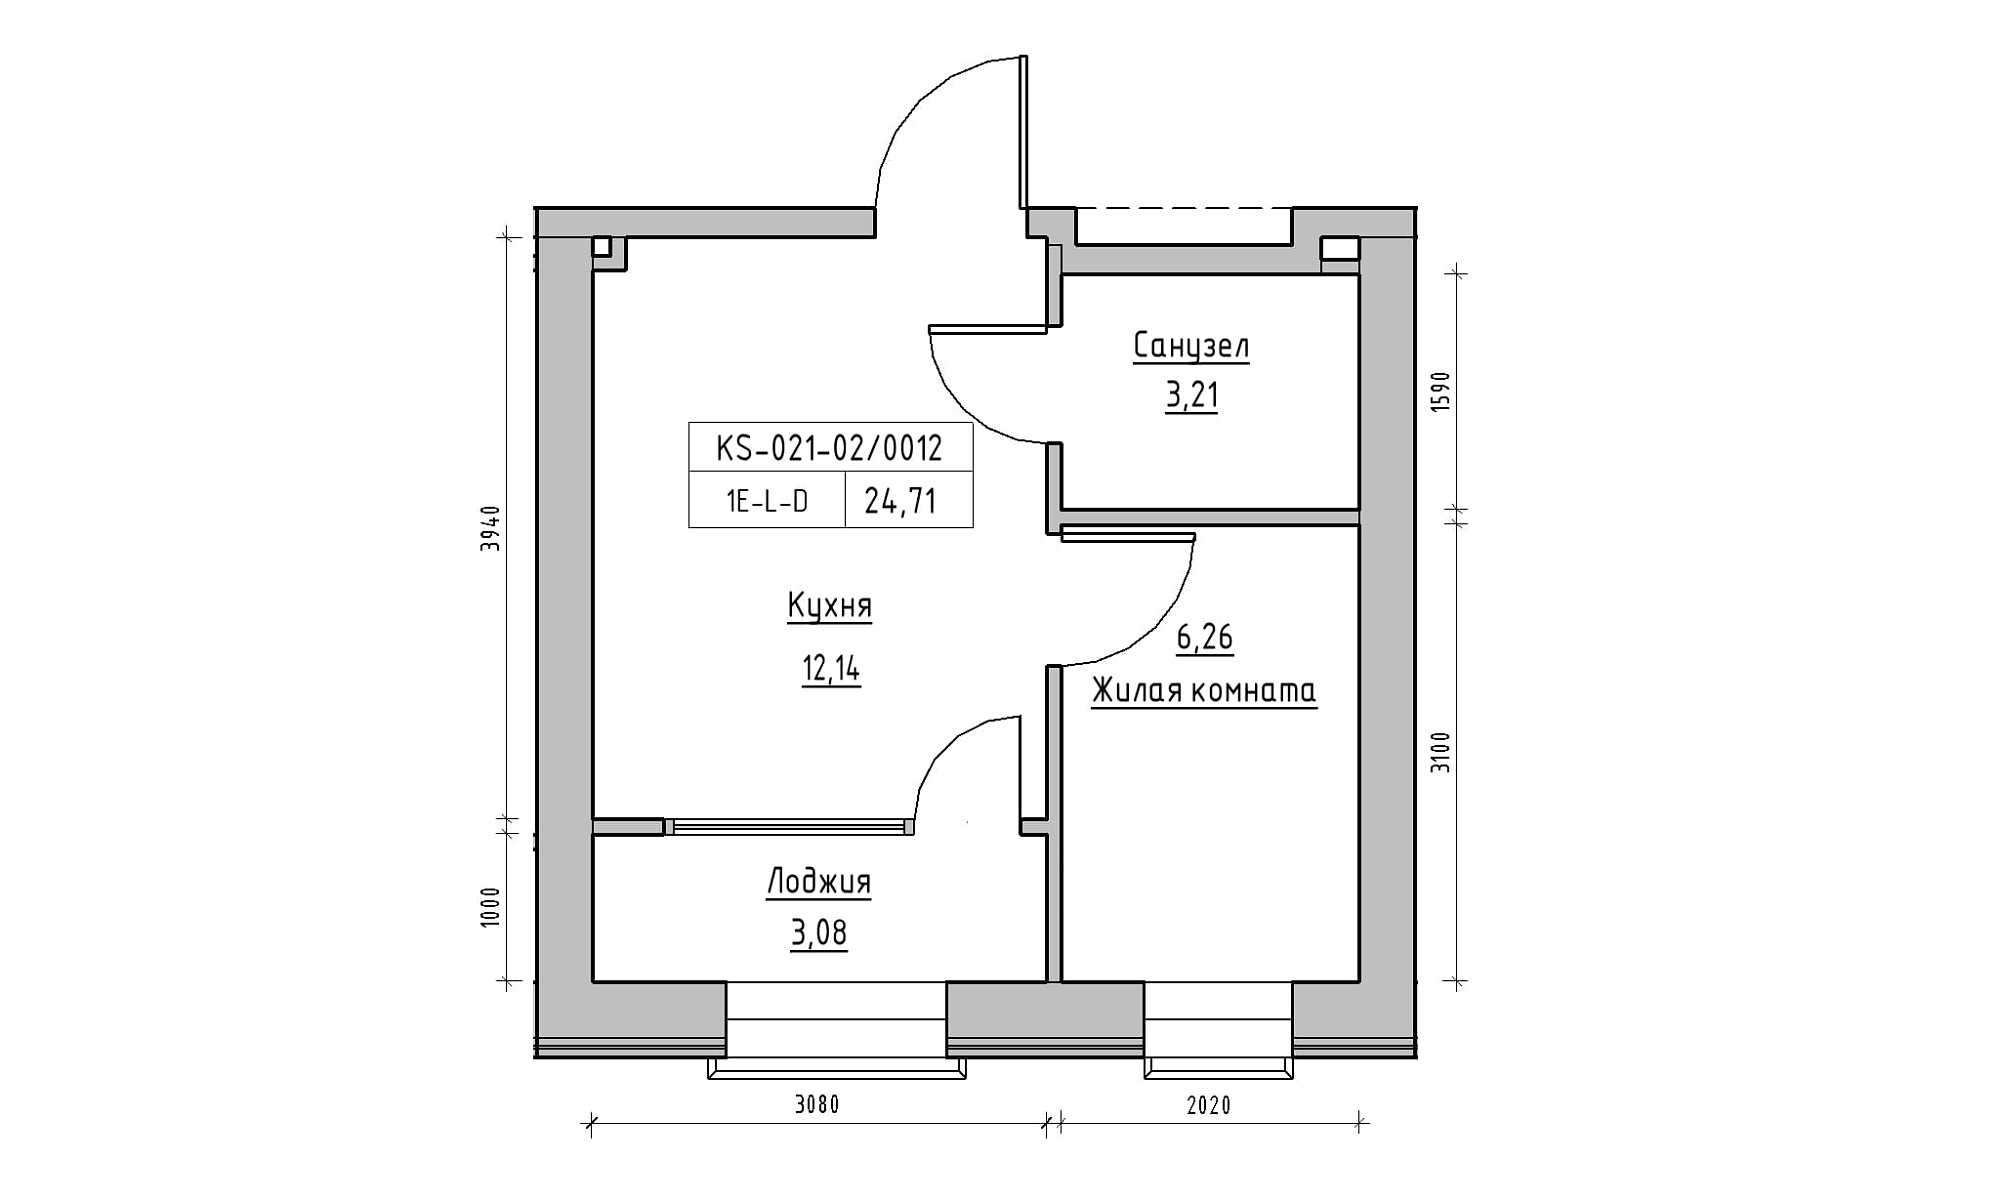 Планировка 1-к квартира площей 24.71м2, KS-021-02/0012.